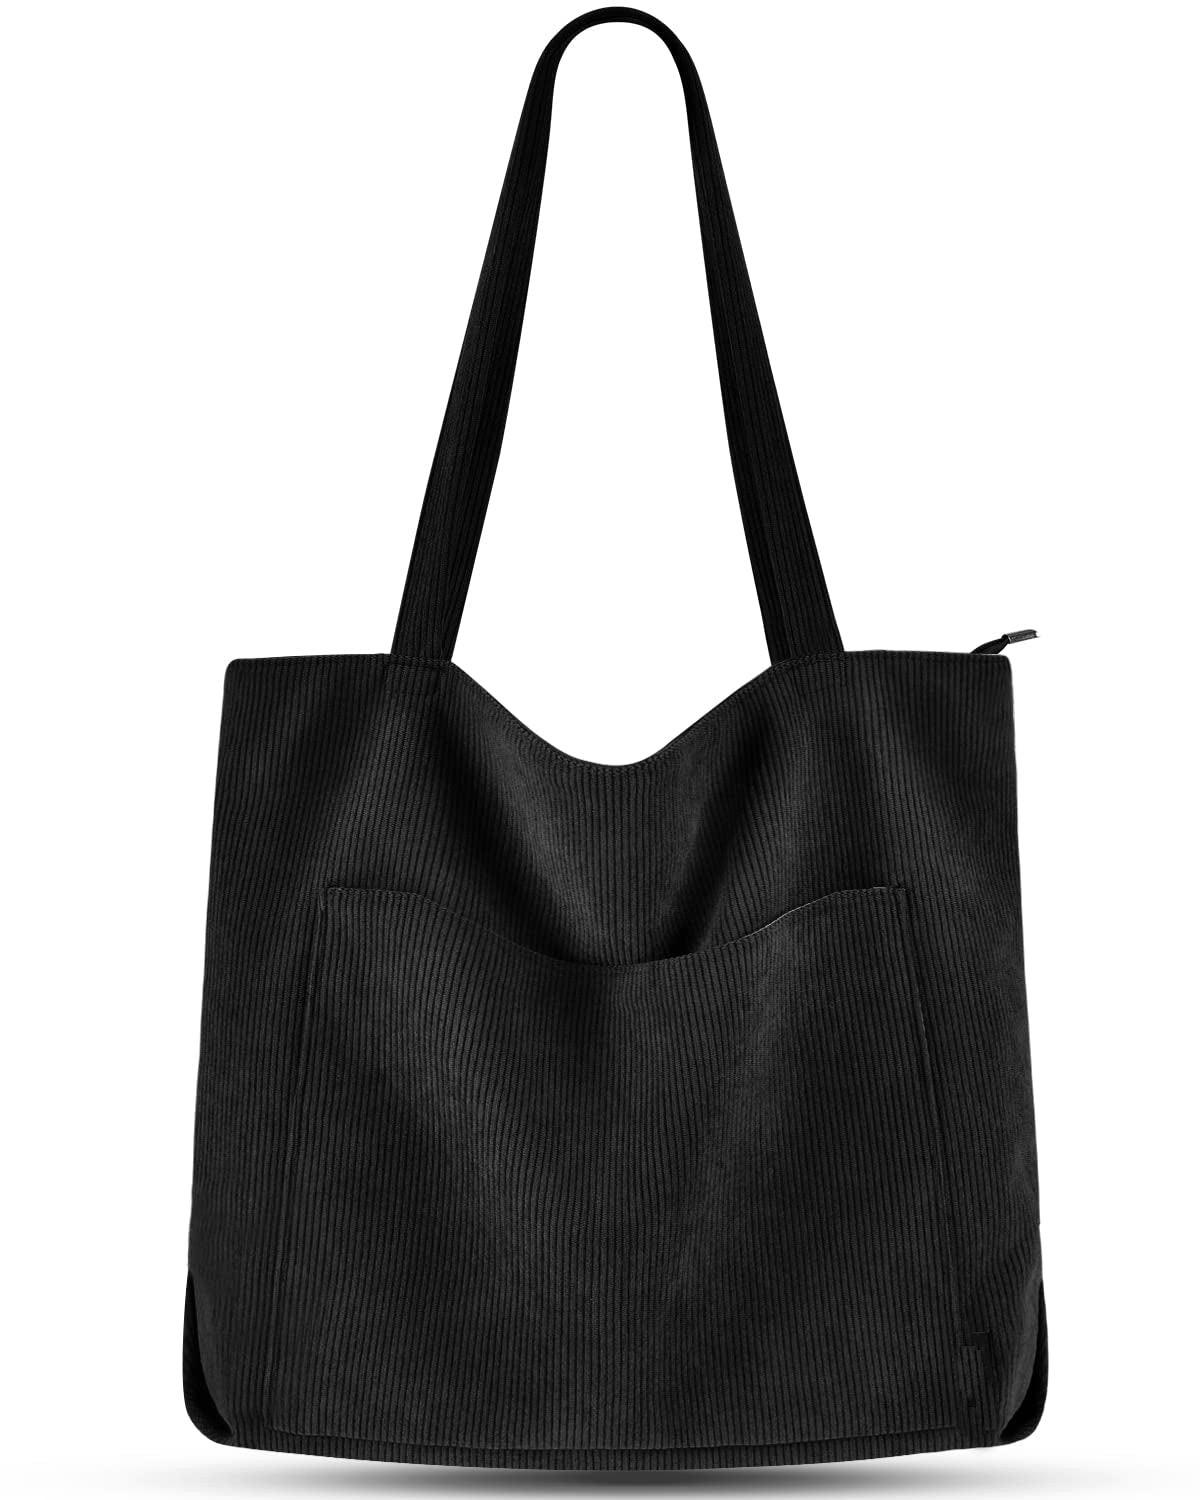 Cord Tasche Umhängetasche Mit Reißverschluss, Groß Shopper Tasche Tote Bag Handtasche Damen Schwarz ONE SIZE von Only-bags.store